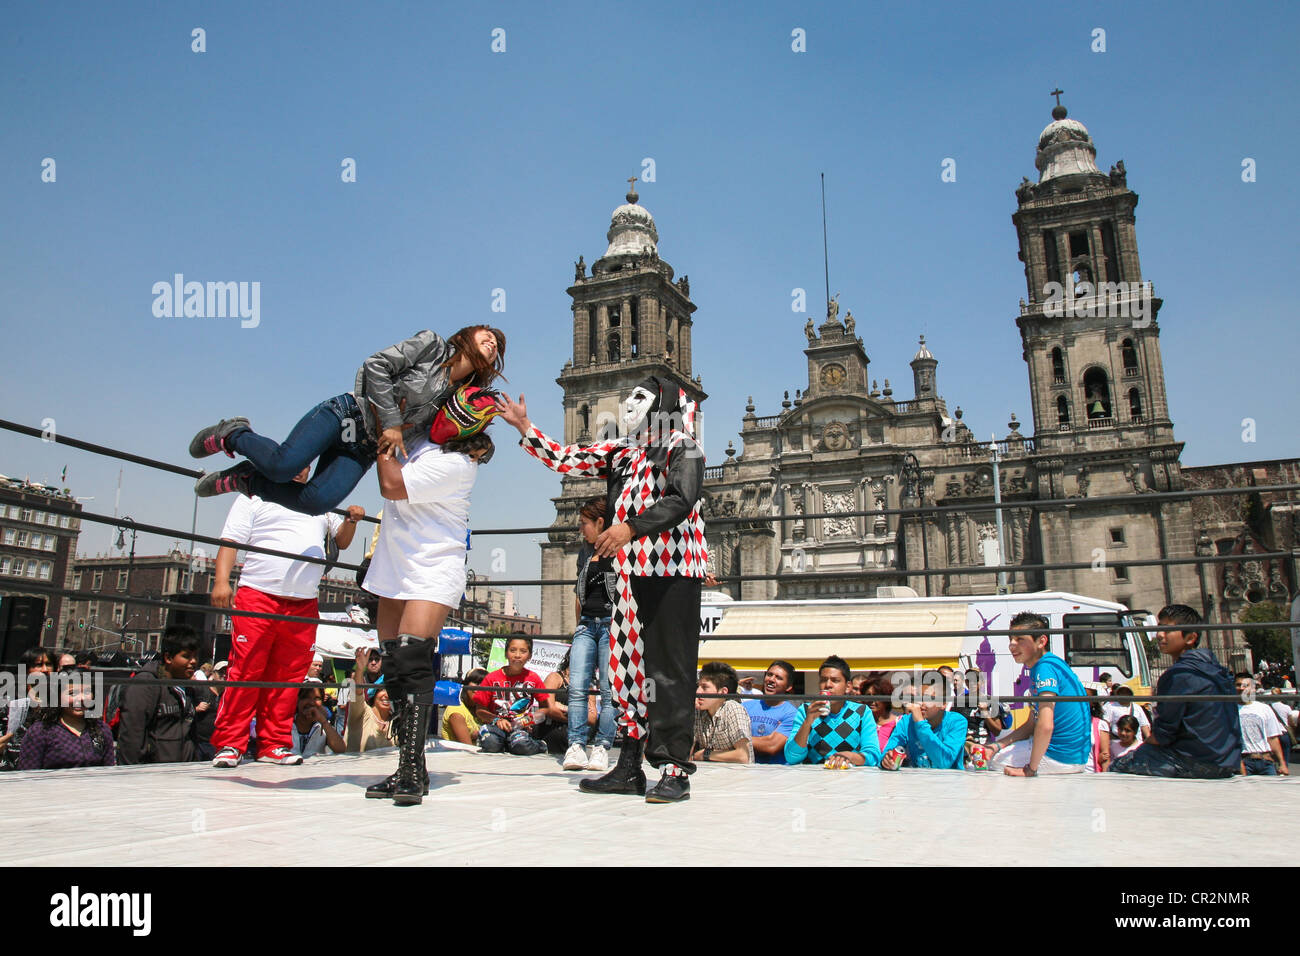 Luchadors mexicains divertir les gens avec lucha libre sur Zocalo en face de la cathédrale Metropolitana sur un week-end à Mexico DF Banque D'Images